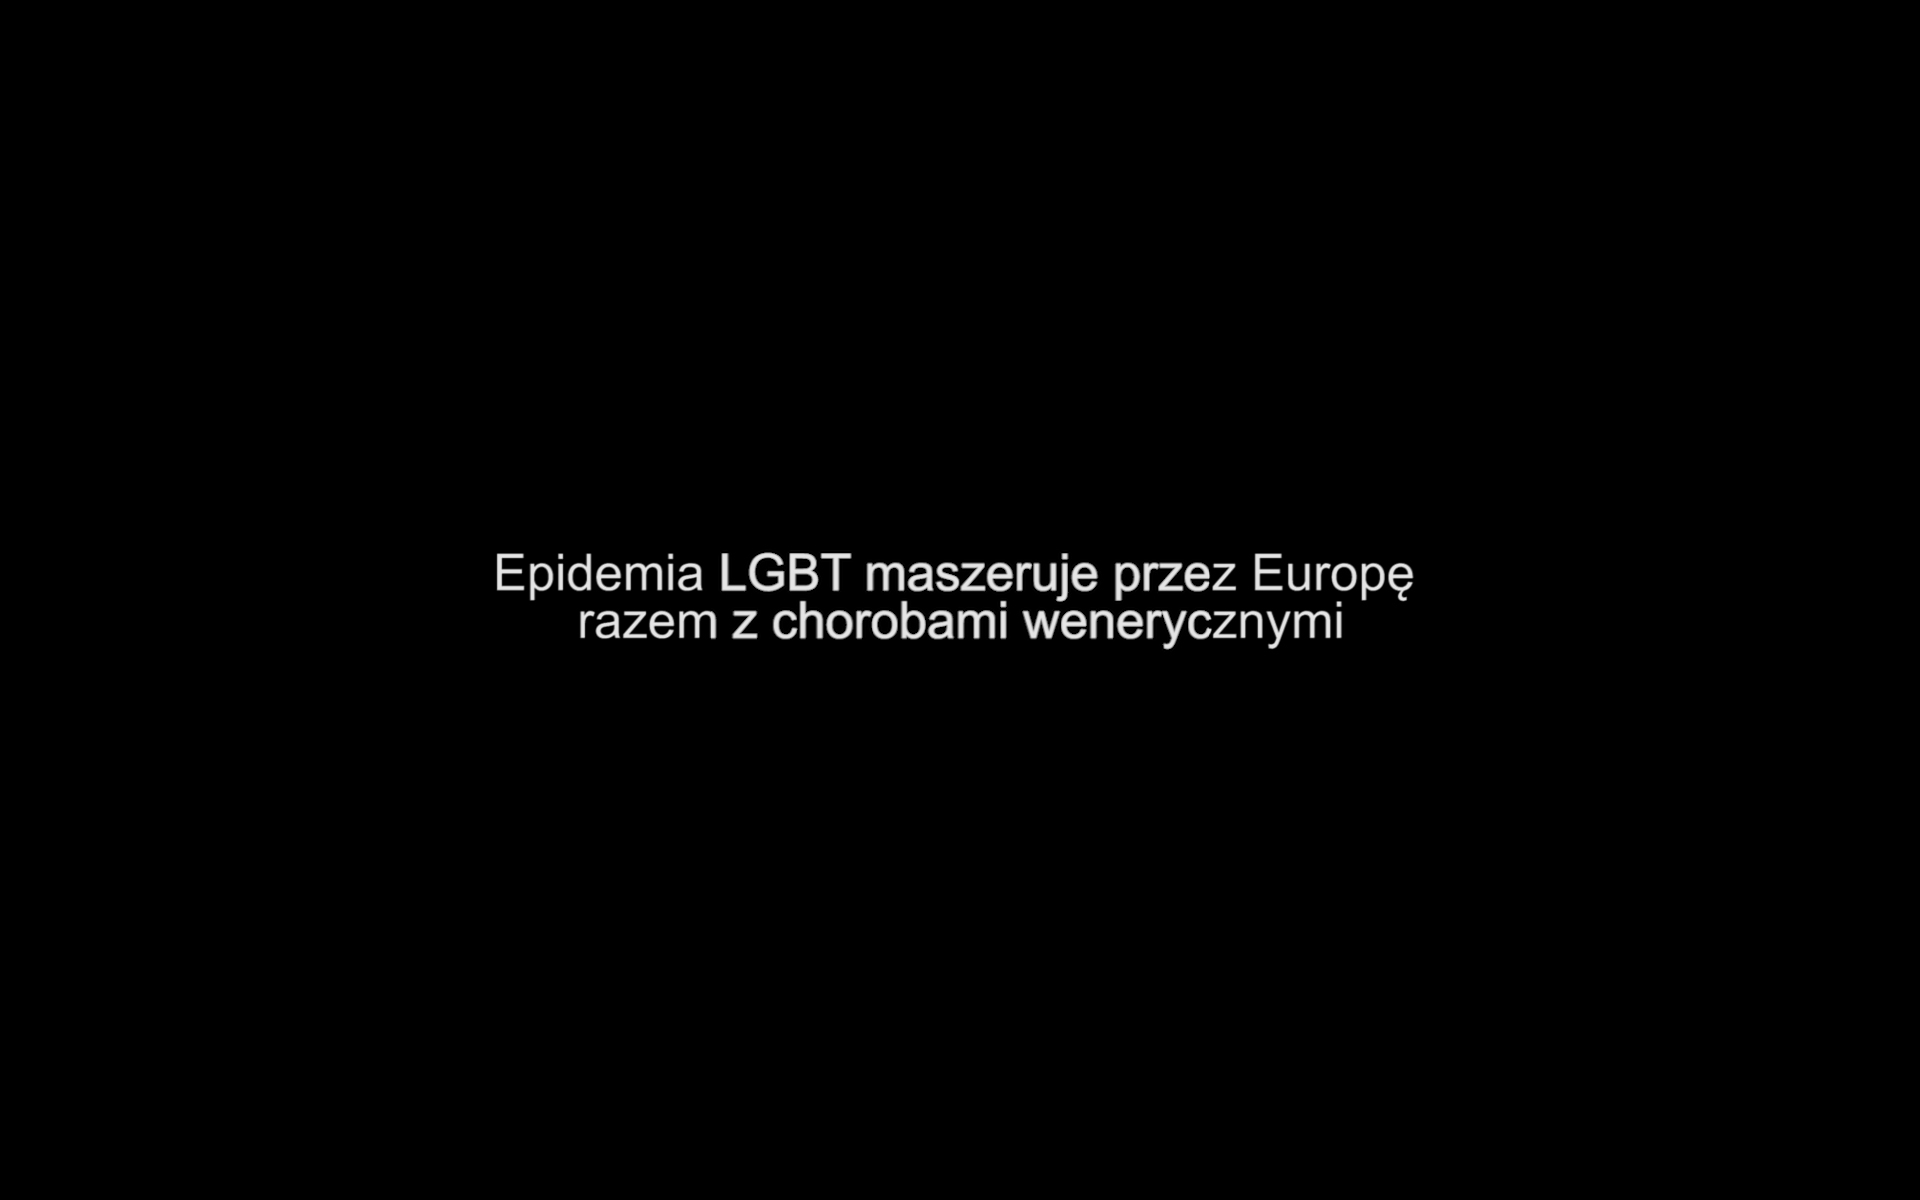 Kadr z filmu. Biały napis "Epidemia LGBT maszeruje przez Europę razem z chorobami wenerycznymi". Czarne tło.